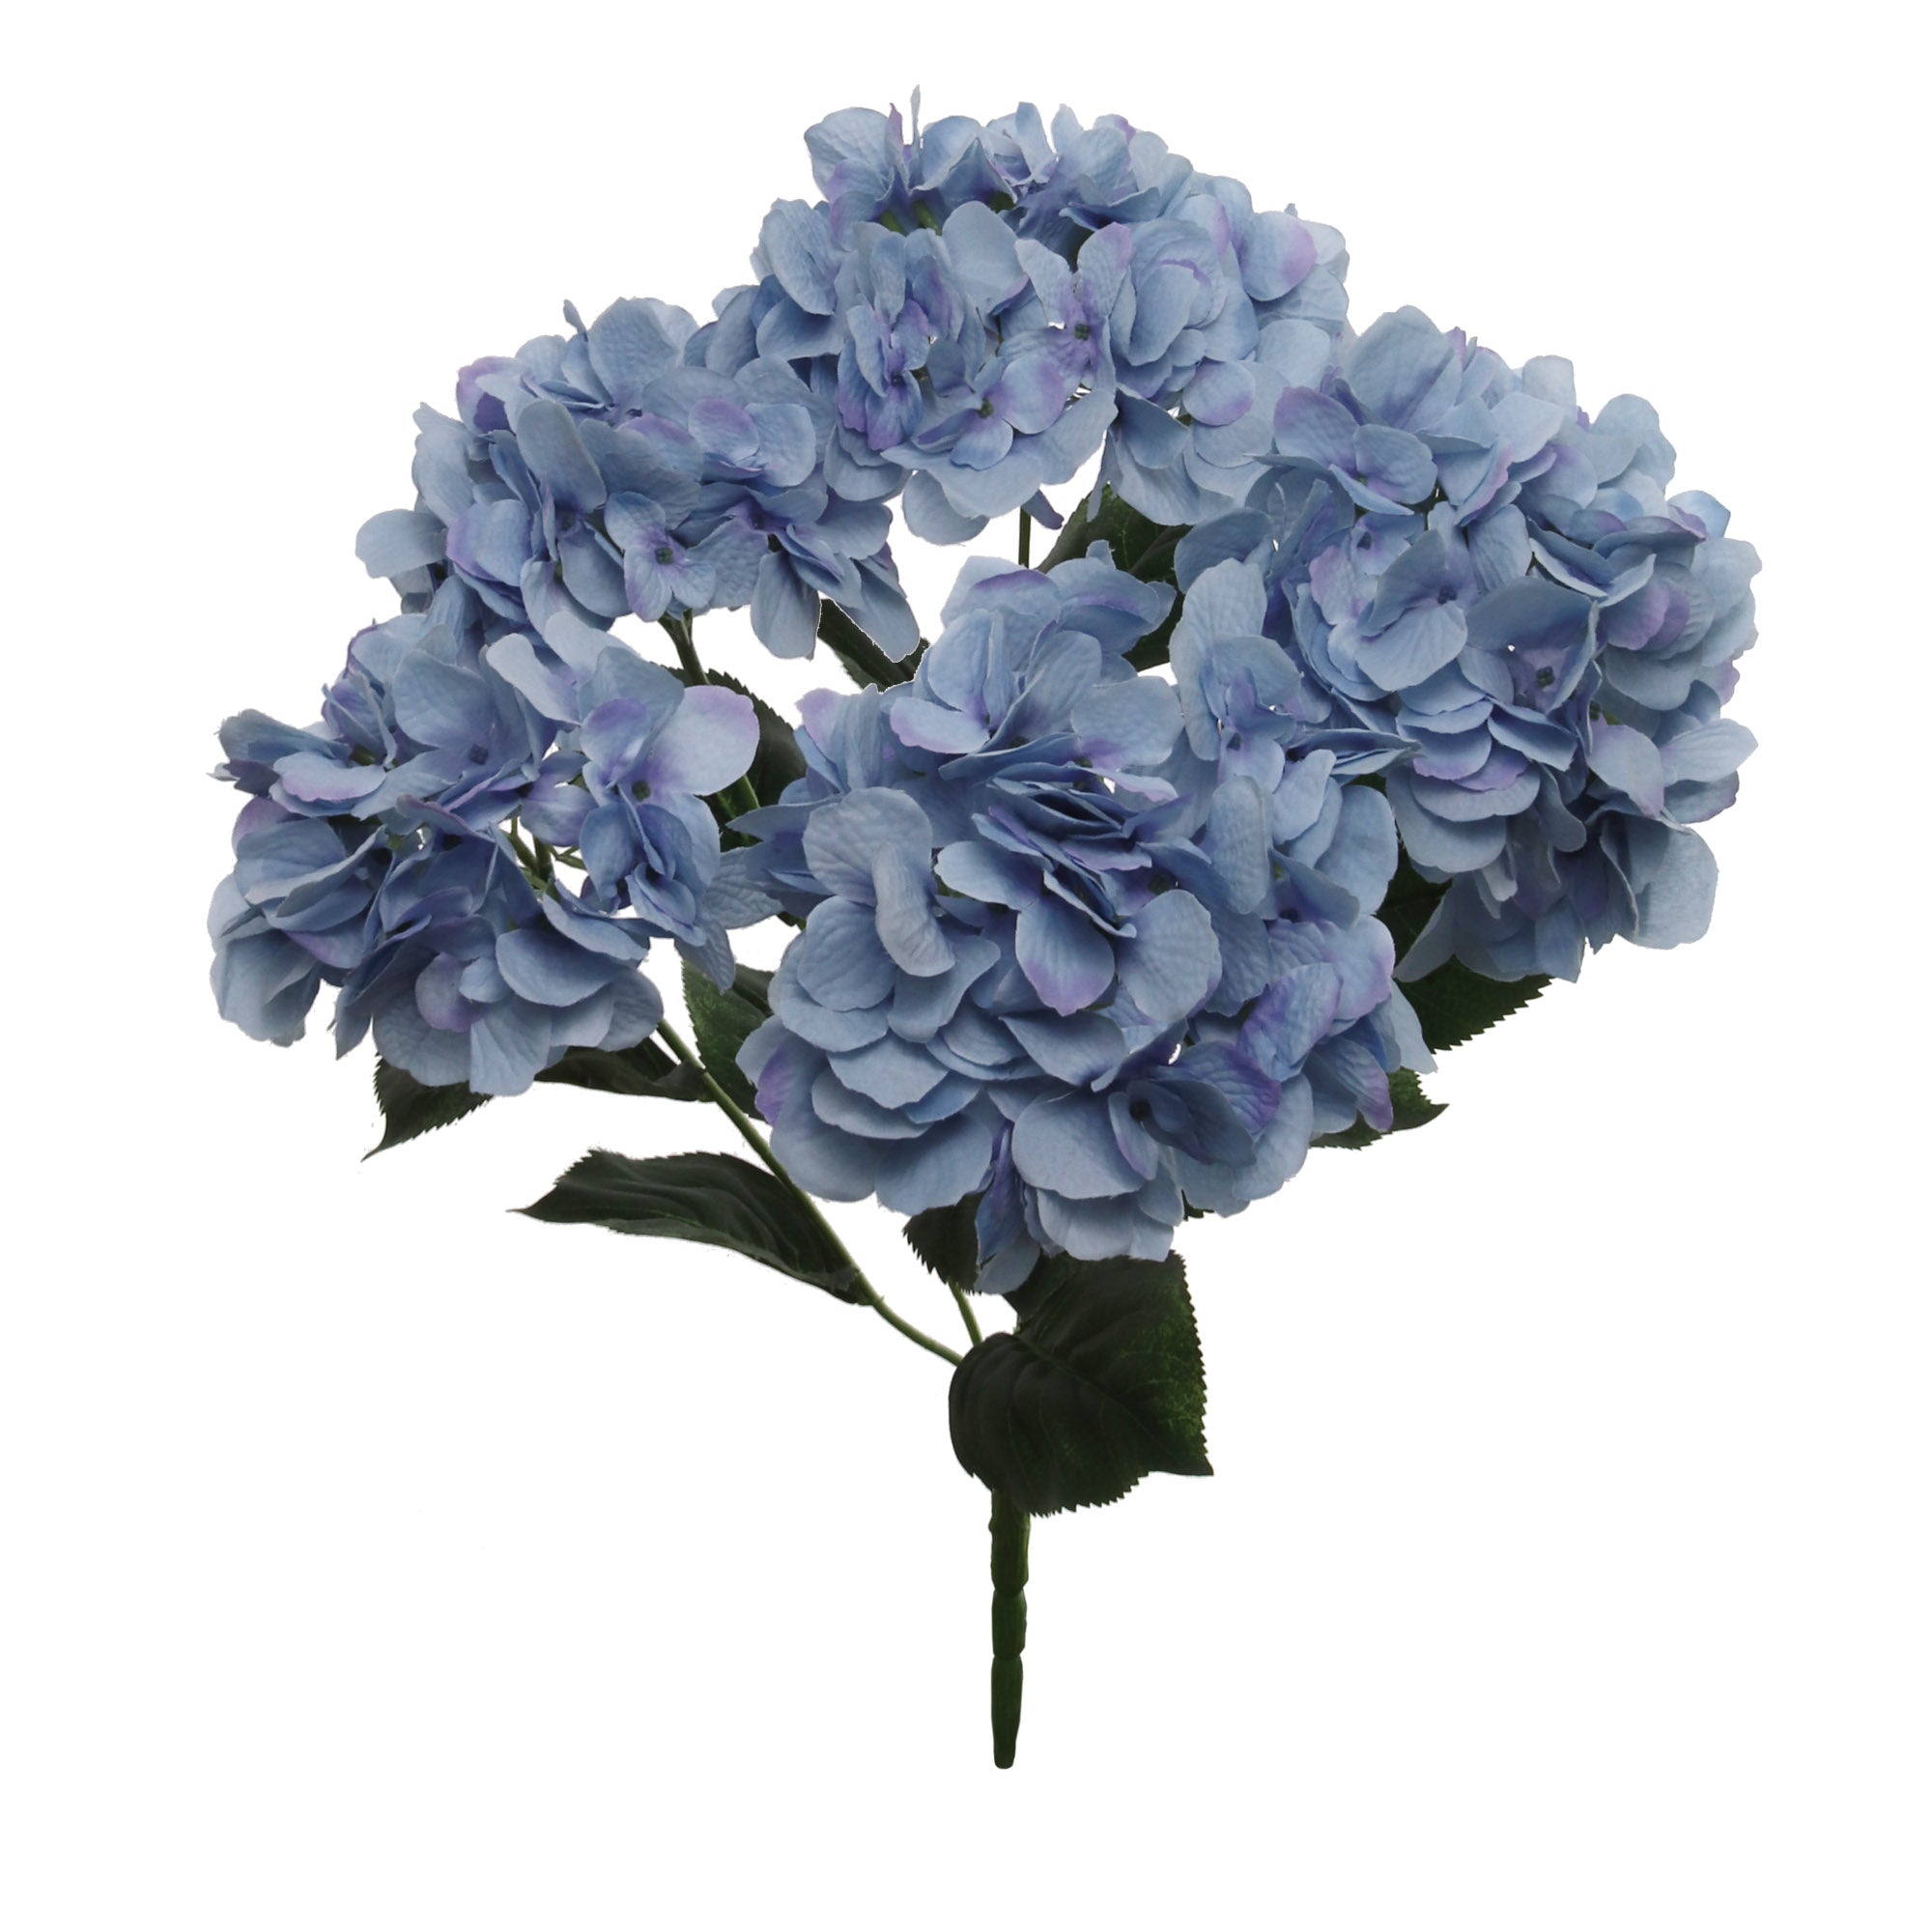 CAPTIVATING BLUE HYDRANGEA BUSH - ARTIFICIAL FLOWER ARRANGEMENT FOR HOME & GARDEN DÉCOR - REALISTIC & MAINTENANCE-FREE FAUX FLORAL ACCENT